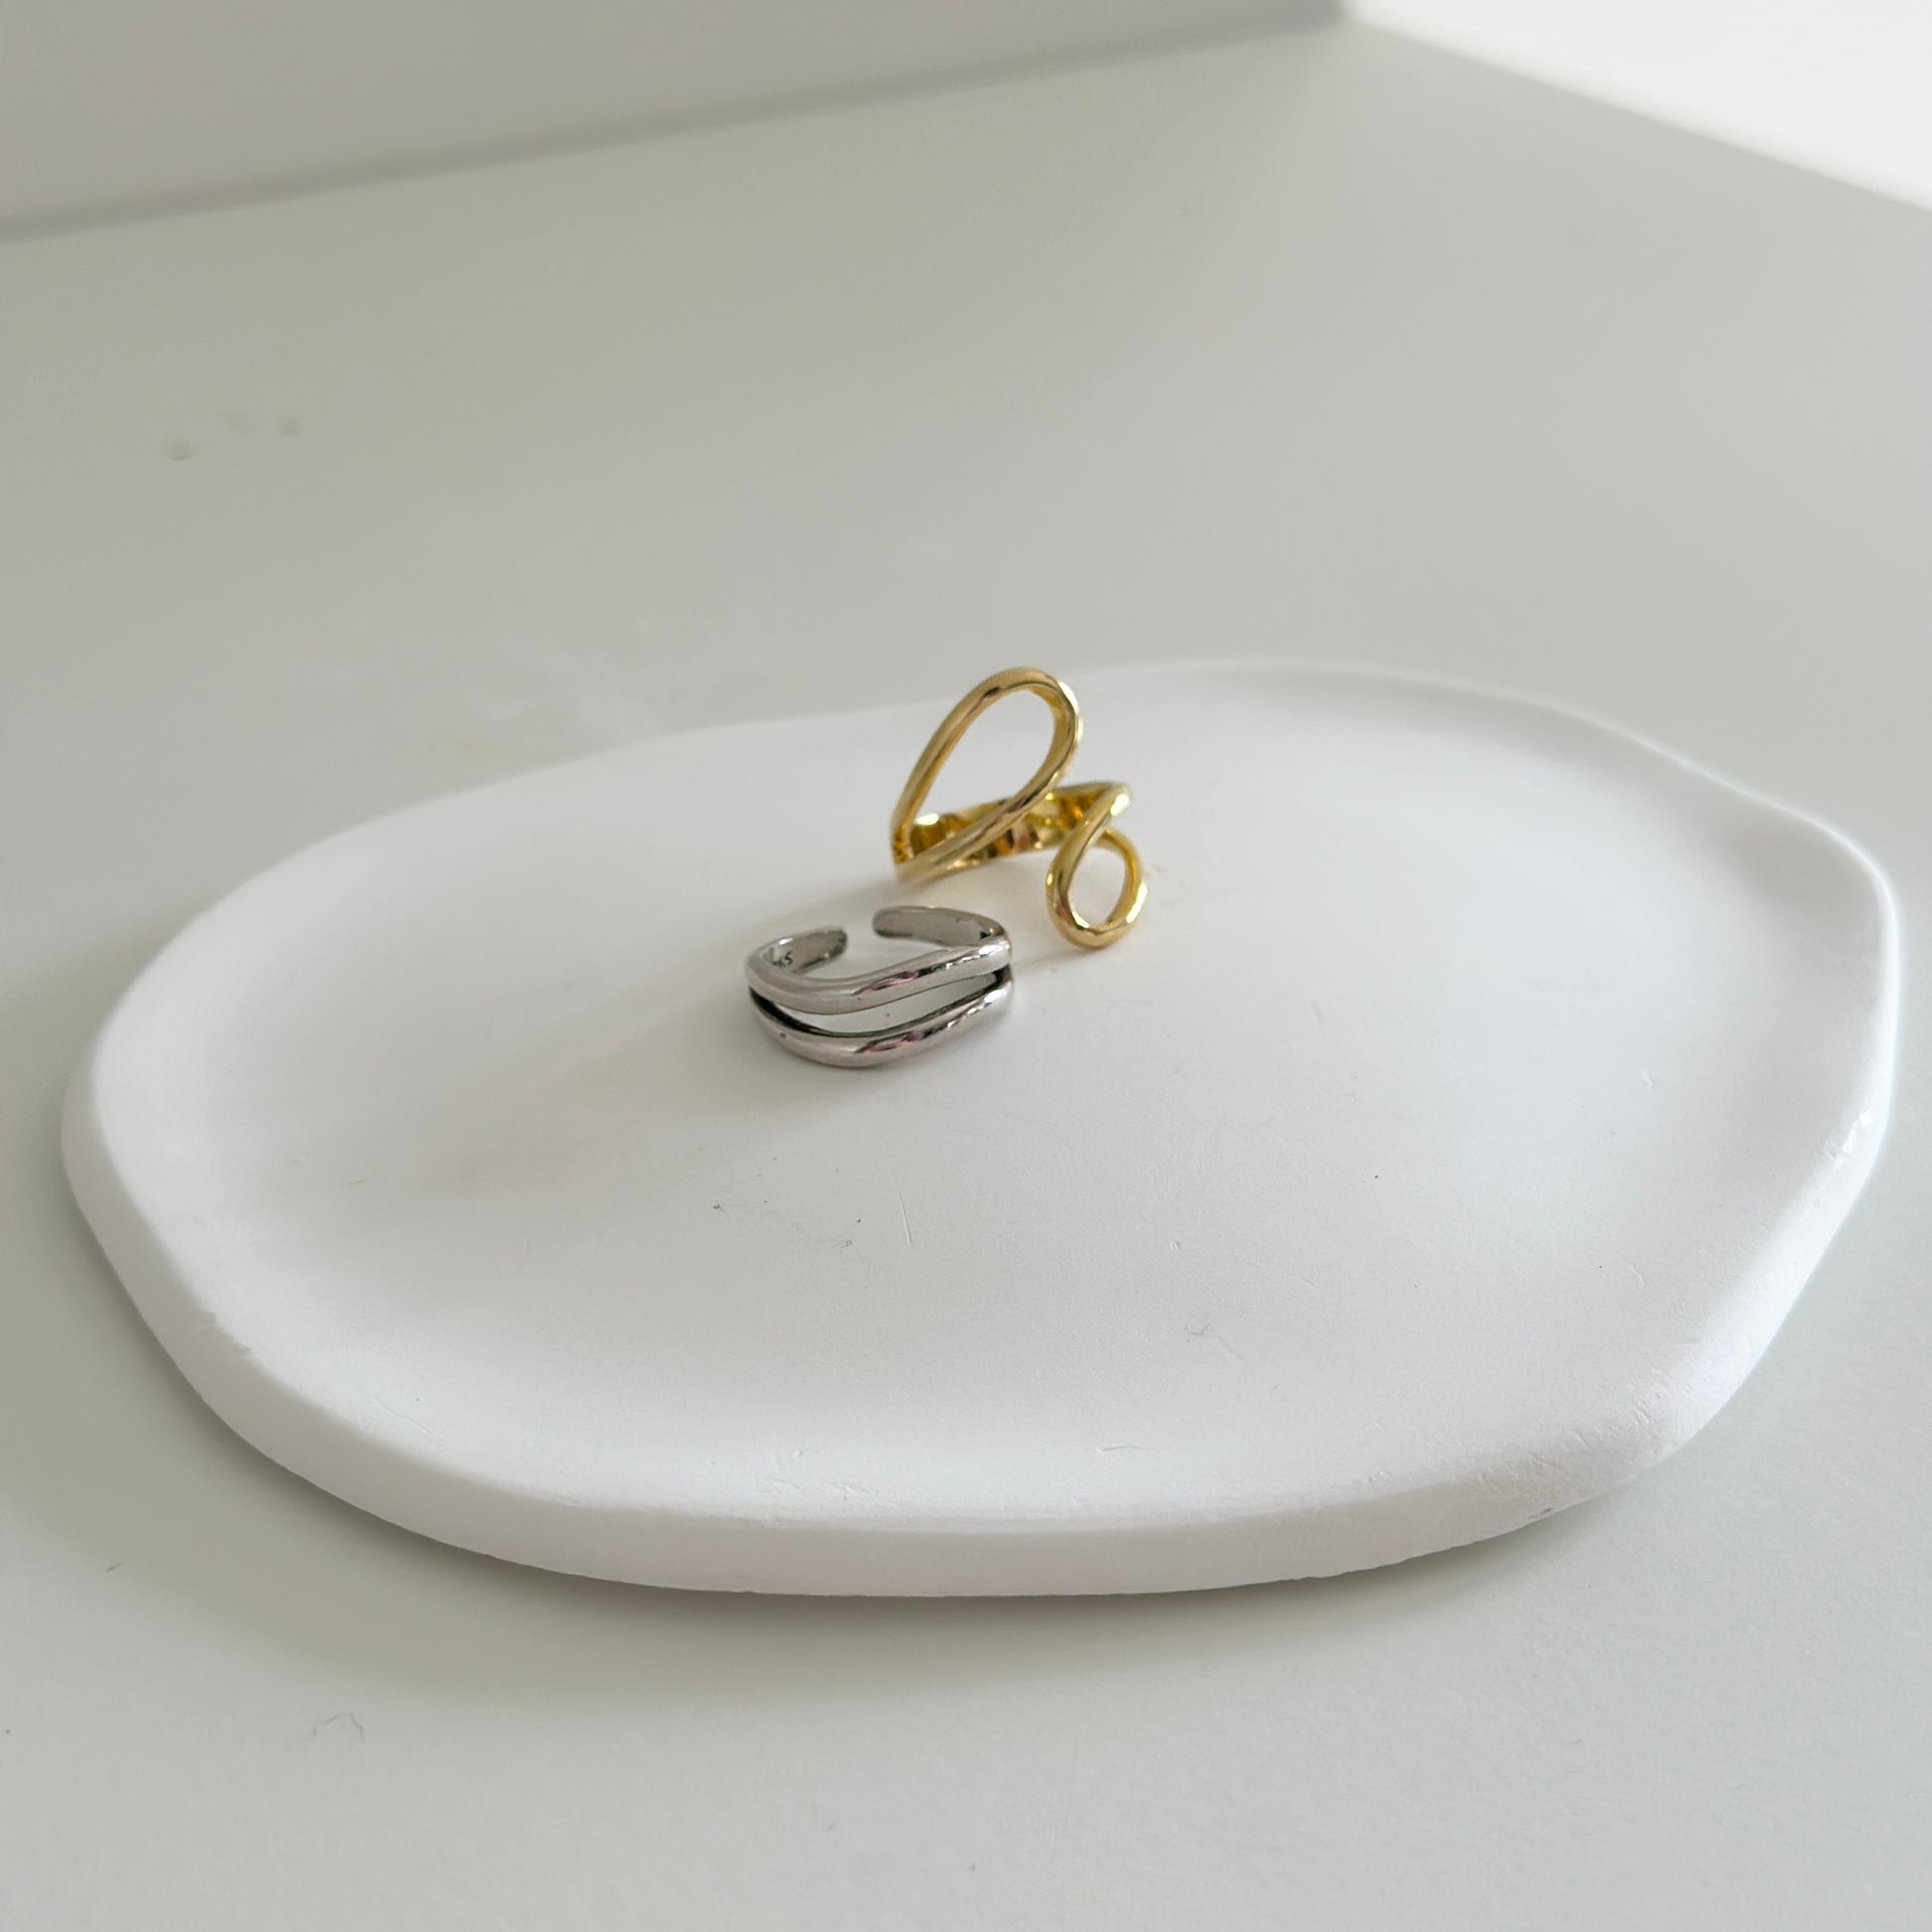 石膏でできたプレートの上に置かれたゴールドのリングと2周のデザインになっているシルバーリング